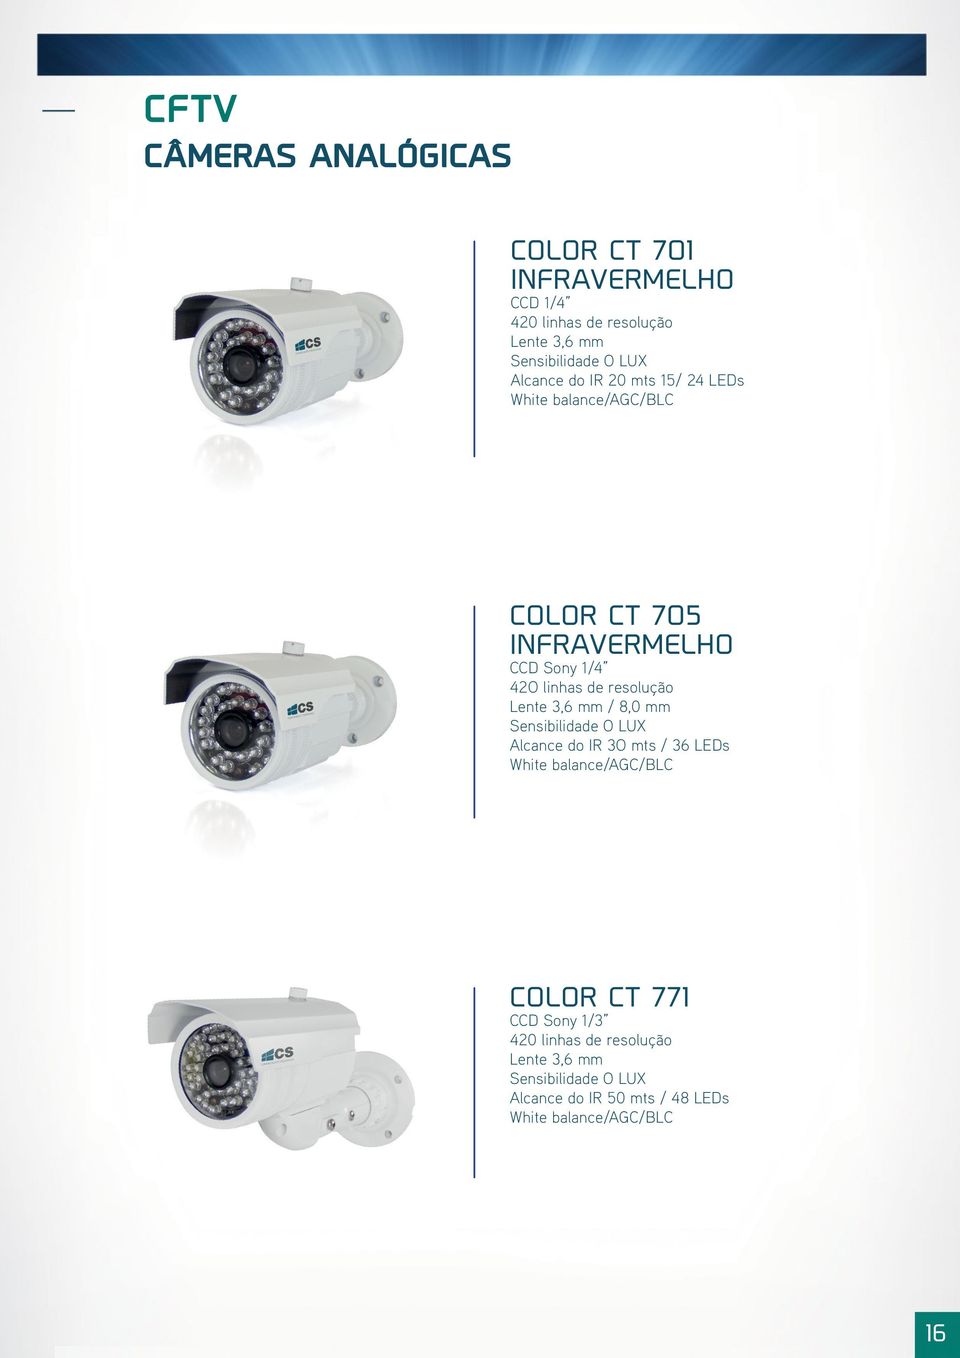 resolução Lente 3,6 mm / 8,0 mm Sensibilidade O LUX Alcance do IR 3O mts / 36 LEDs White balance/agc/blc COLOR CT